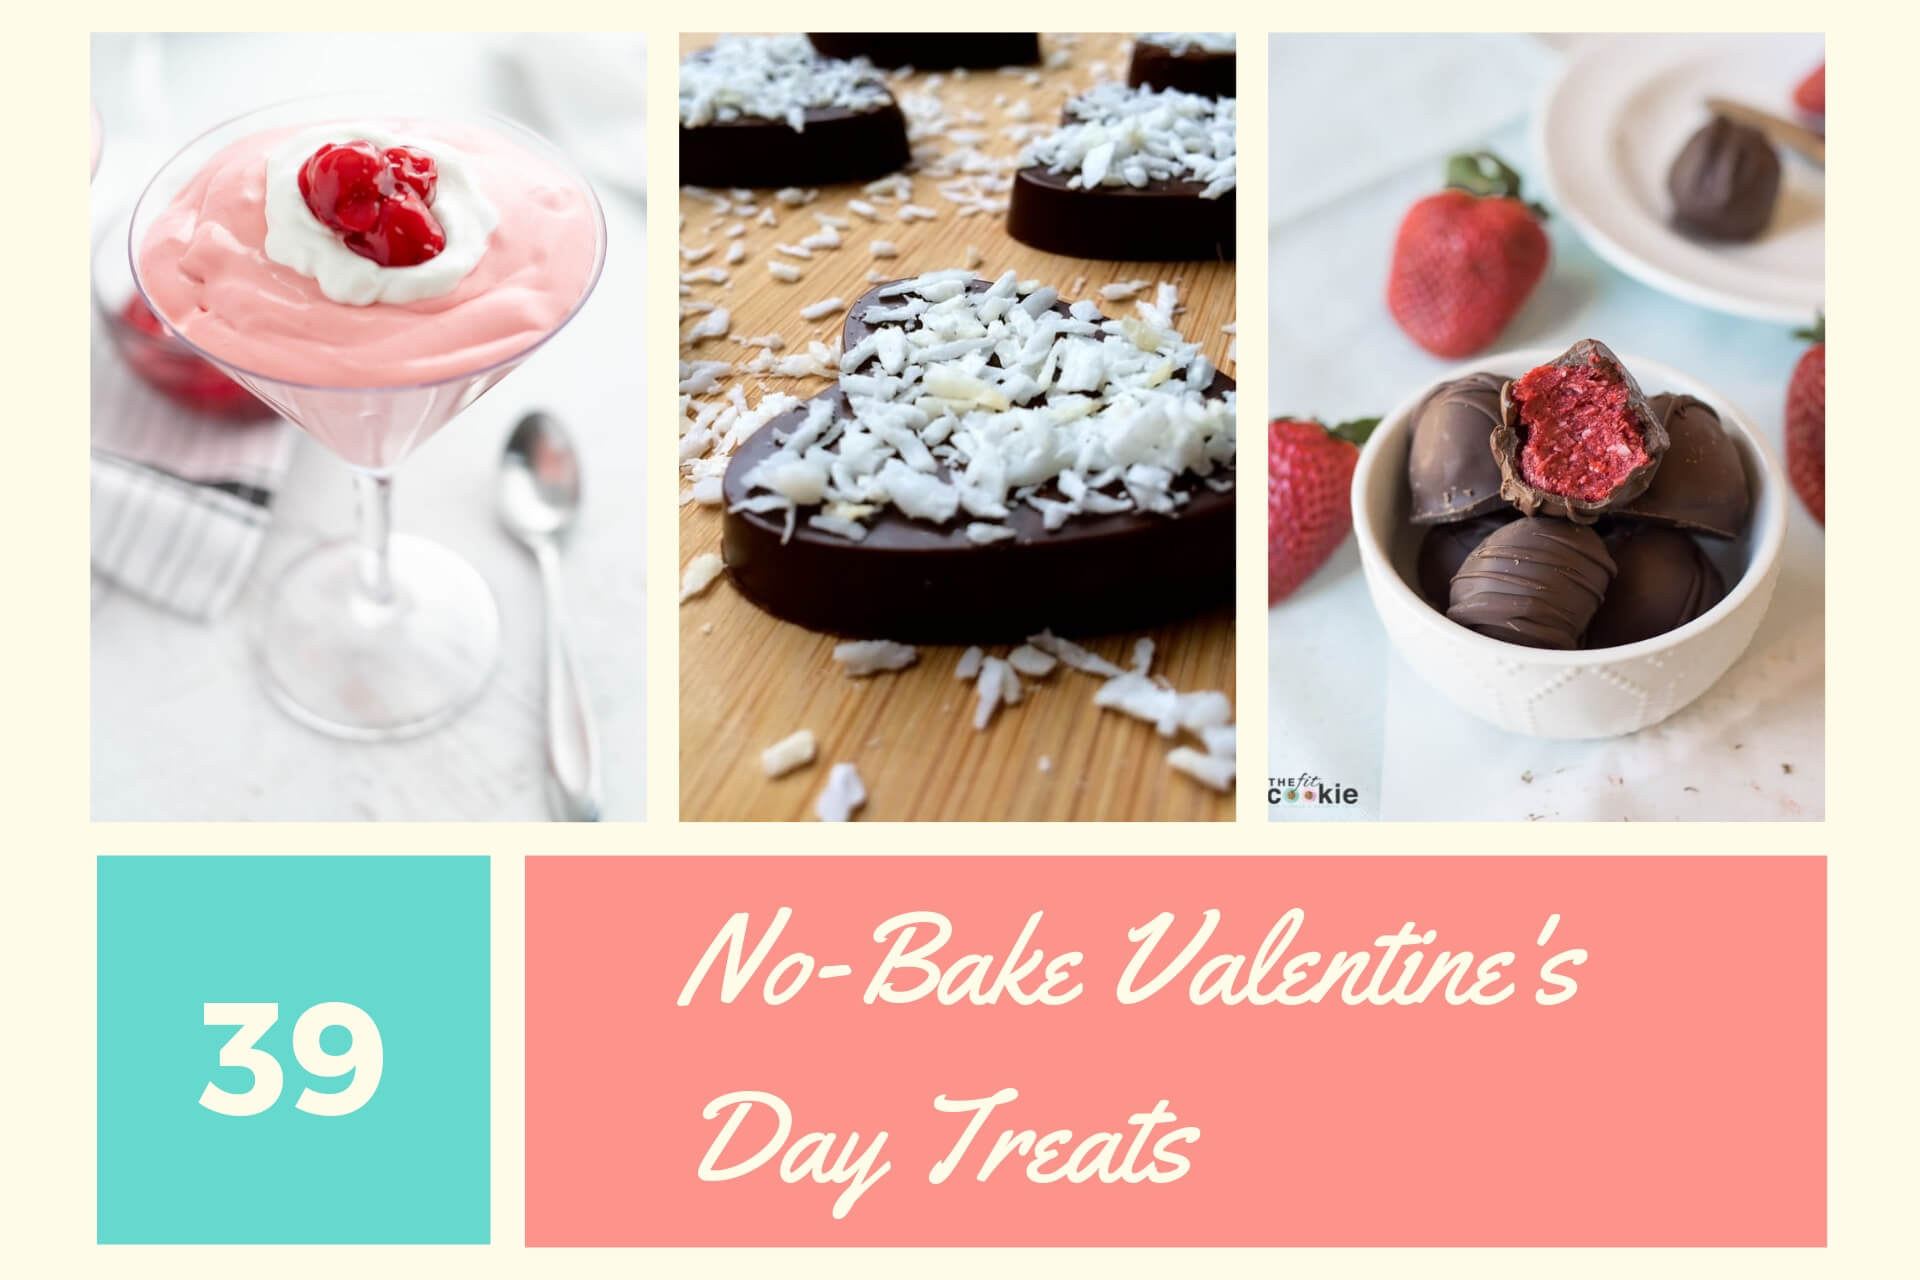 No-Bake Valentine's Day Treats